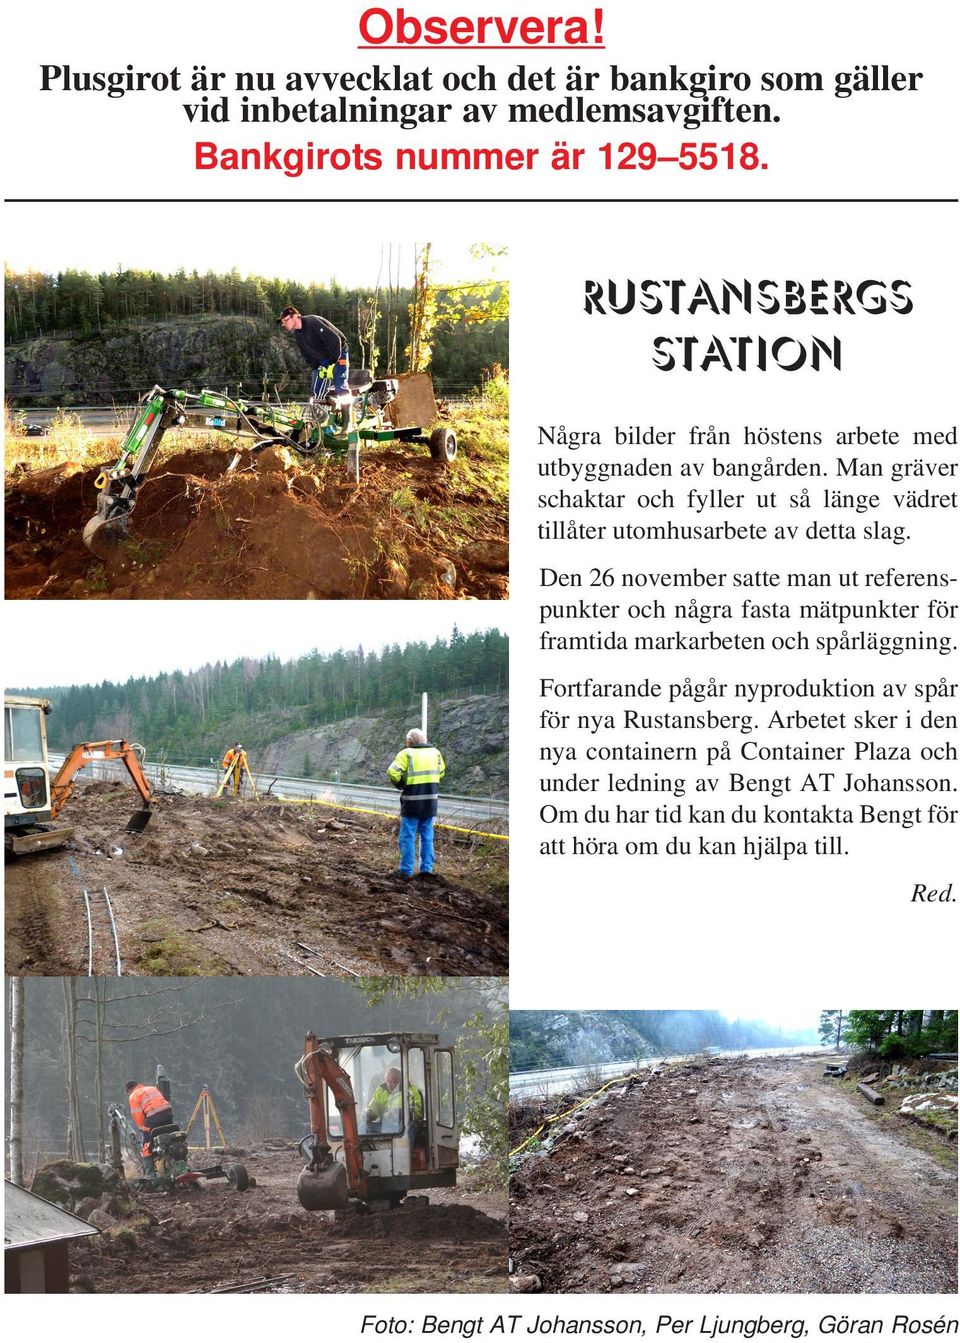 Den 26 november satte man ut referenspunkter och några fasta mätpunkter för framtida markarbeten och spårläggning. Fortfarande pågår nyproduktion av spår för nya Rustansberg.